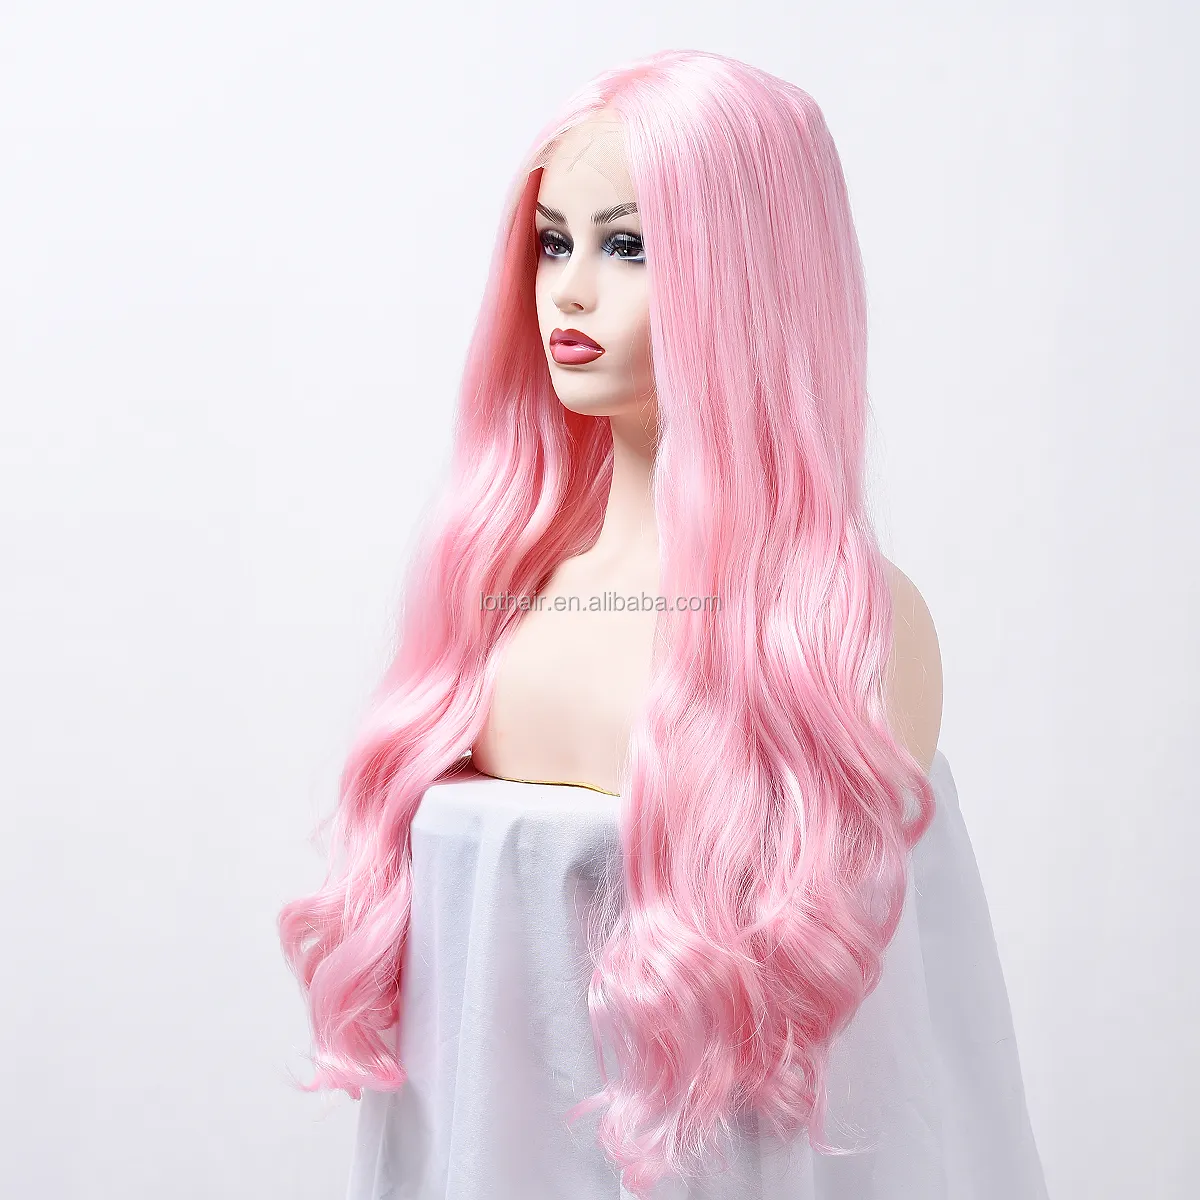 Peluca de cabello sintético liso para mujer, postizo de encaje frontal, color rosa